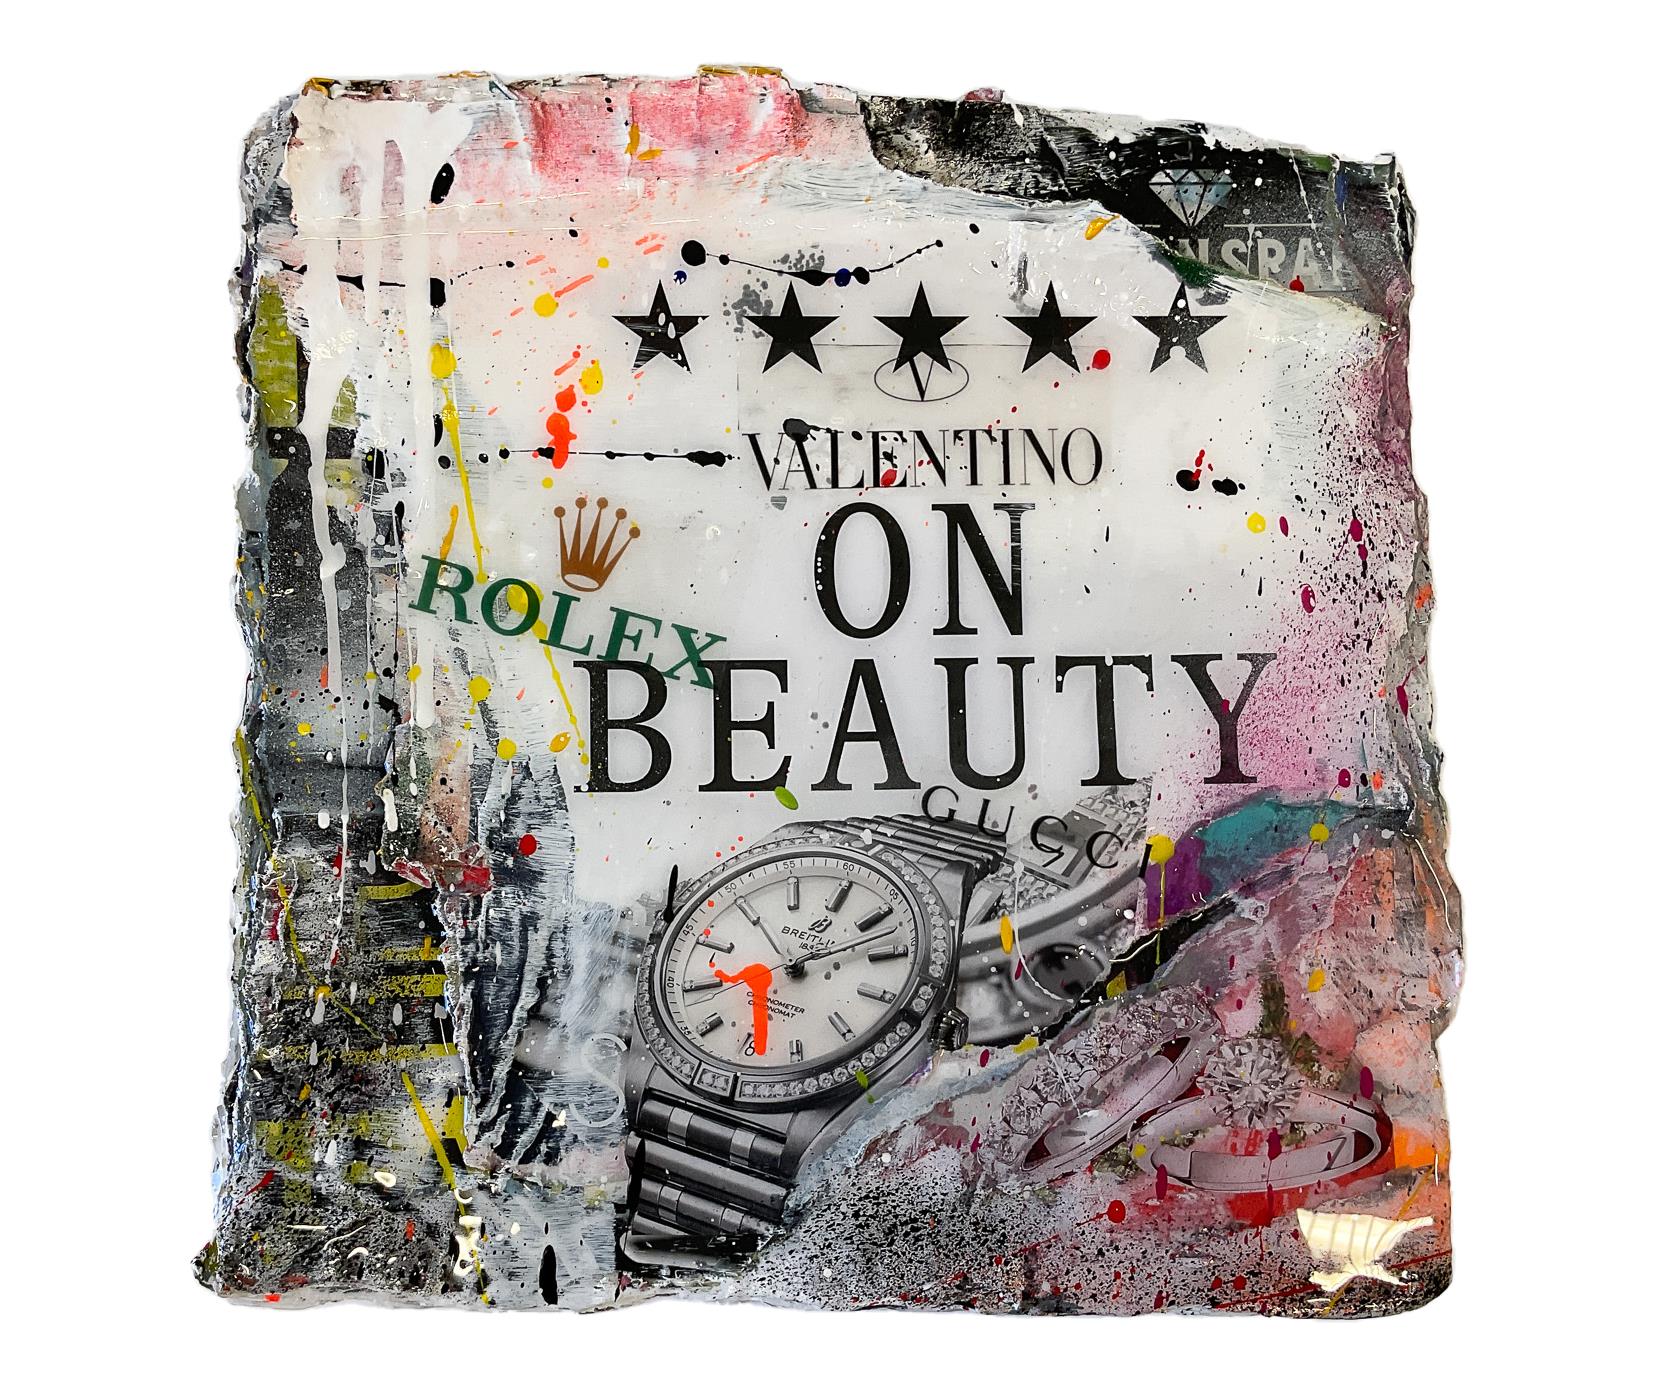 Crazy box - valentino on beauty - Kiesewalter, Tanja - k-2303TK4